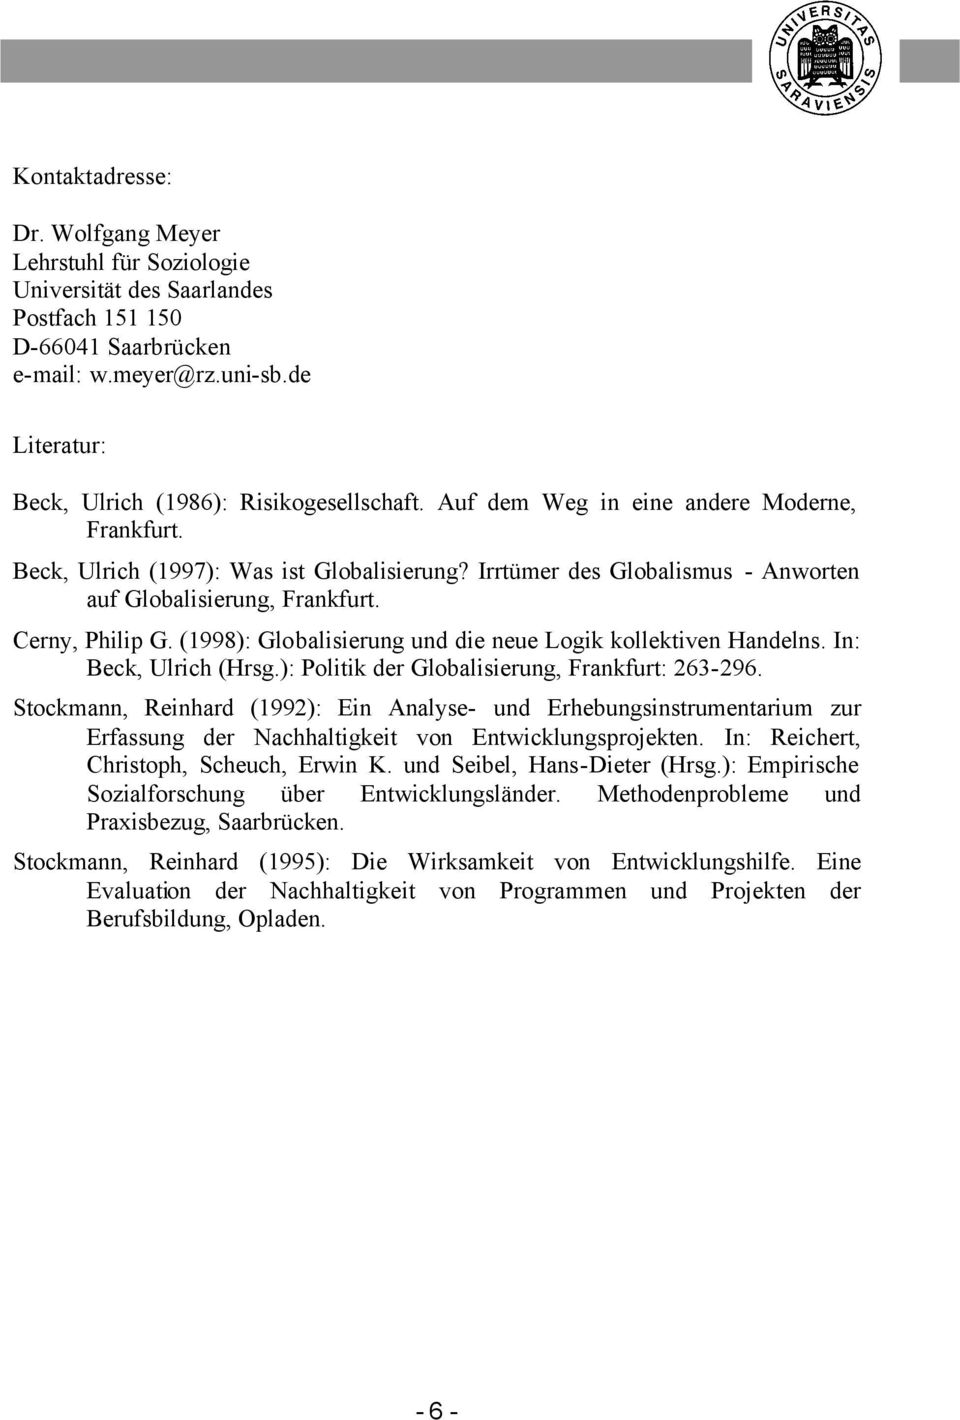 Irrtümer des Globalismus - Anworten auf Globalisierung, Frankfurt. Cerny, Philip G. (1998): Globalisierung und die neue Logik kollektiven Handelns. In: Beck, Ulrich (Hrsg.